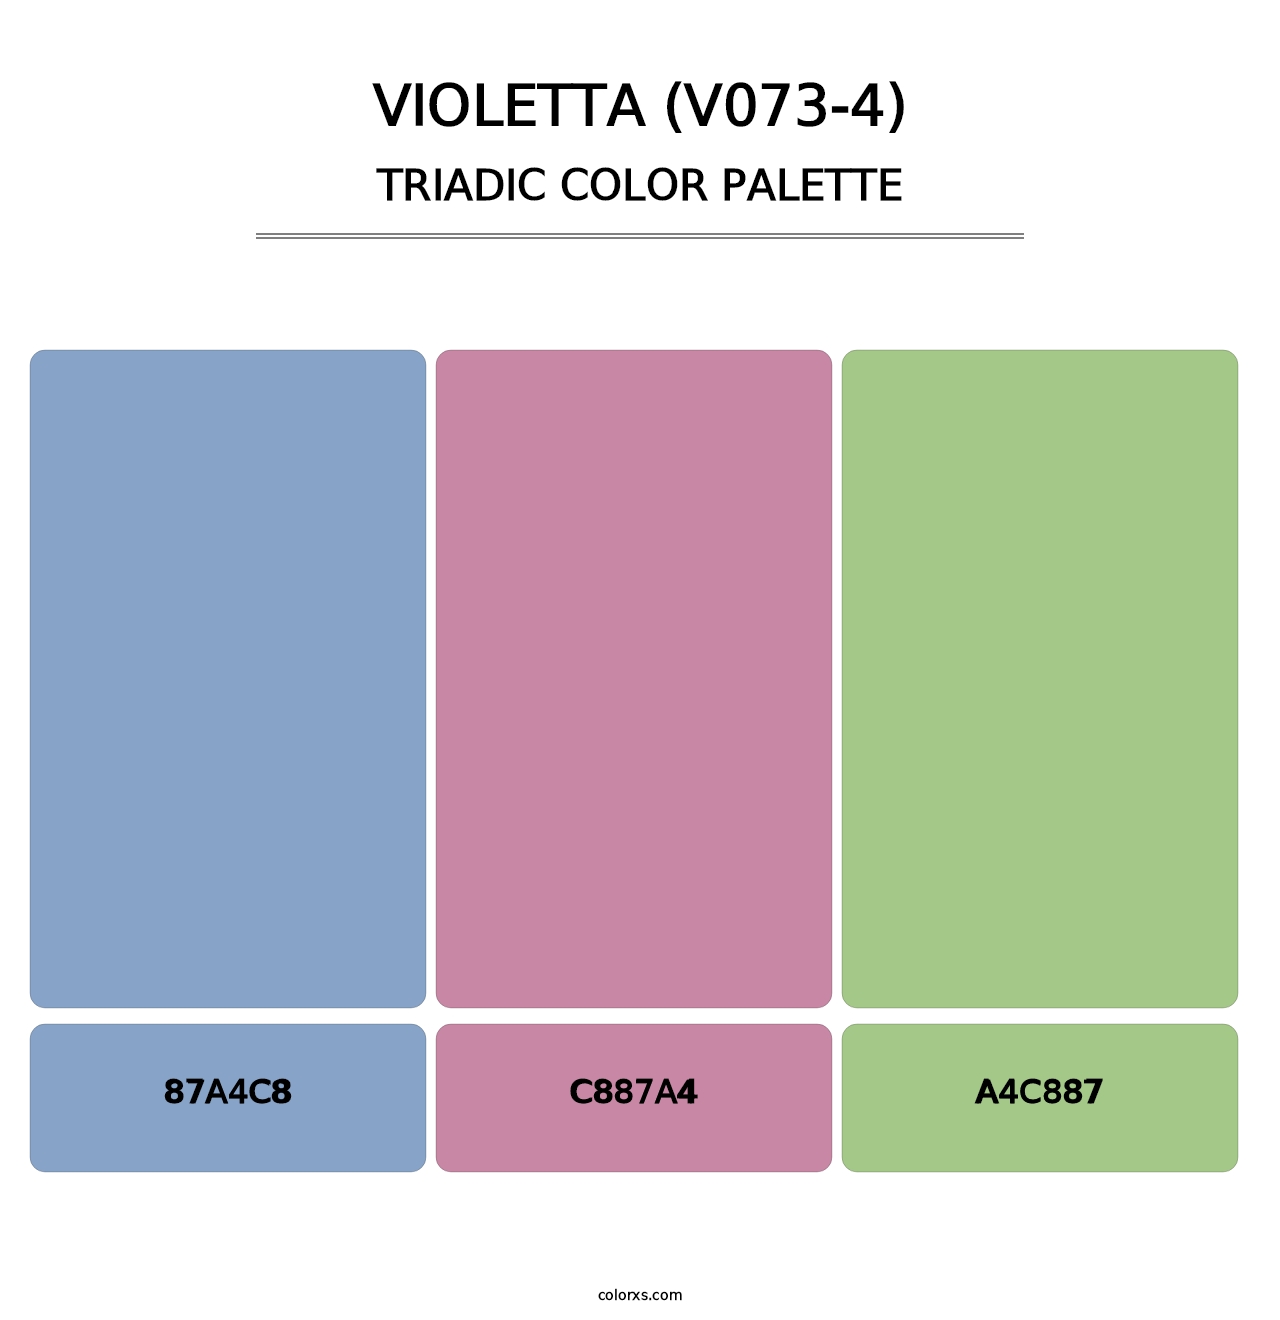 Violetta (V073-4) - Triadic Color Palette